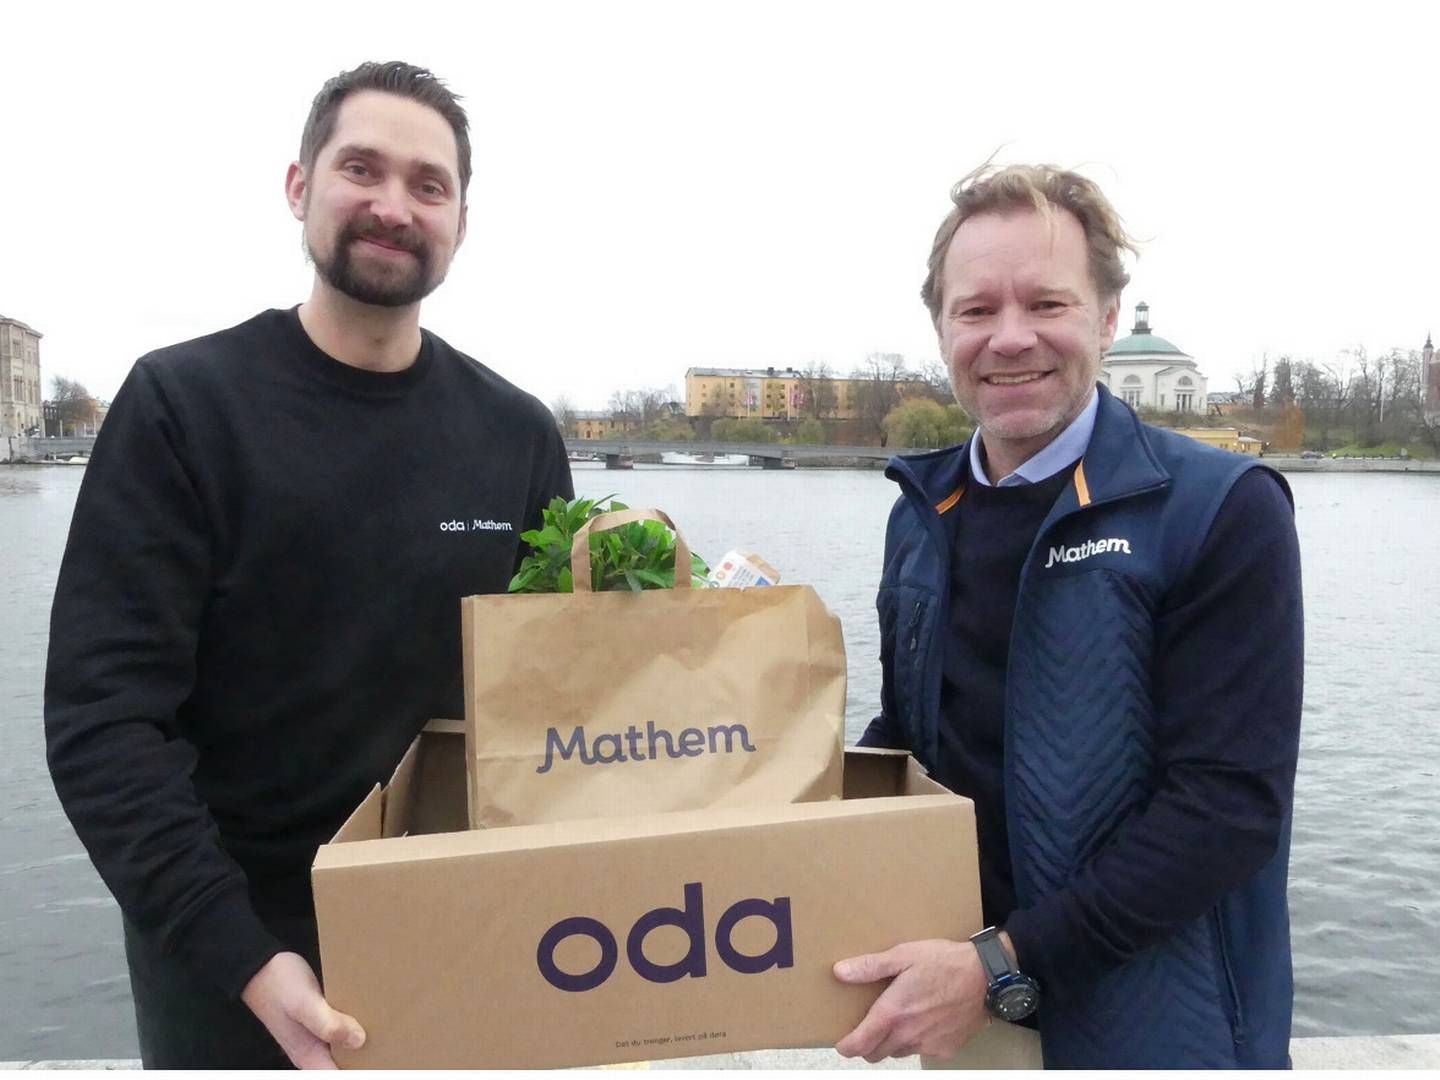 Norske Oda og svenske Mathem slår sig sammen, men begge fortsætter i hver deres brands. | Foto: Mathem